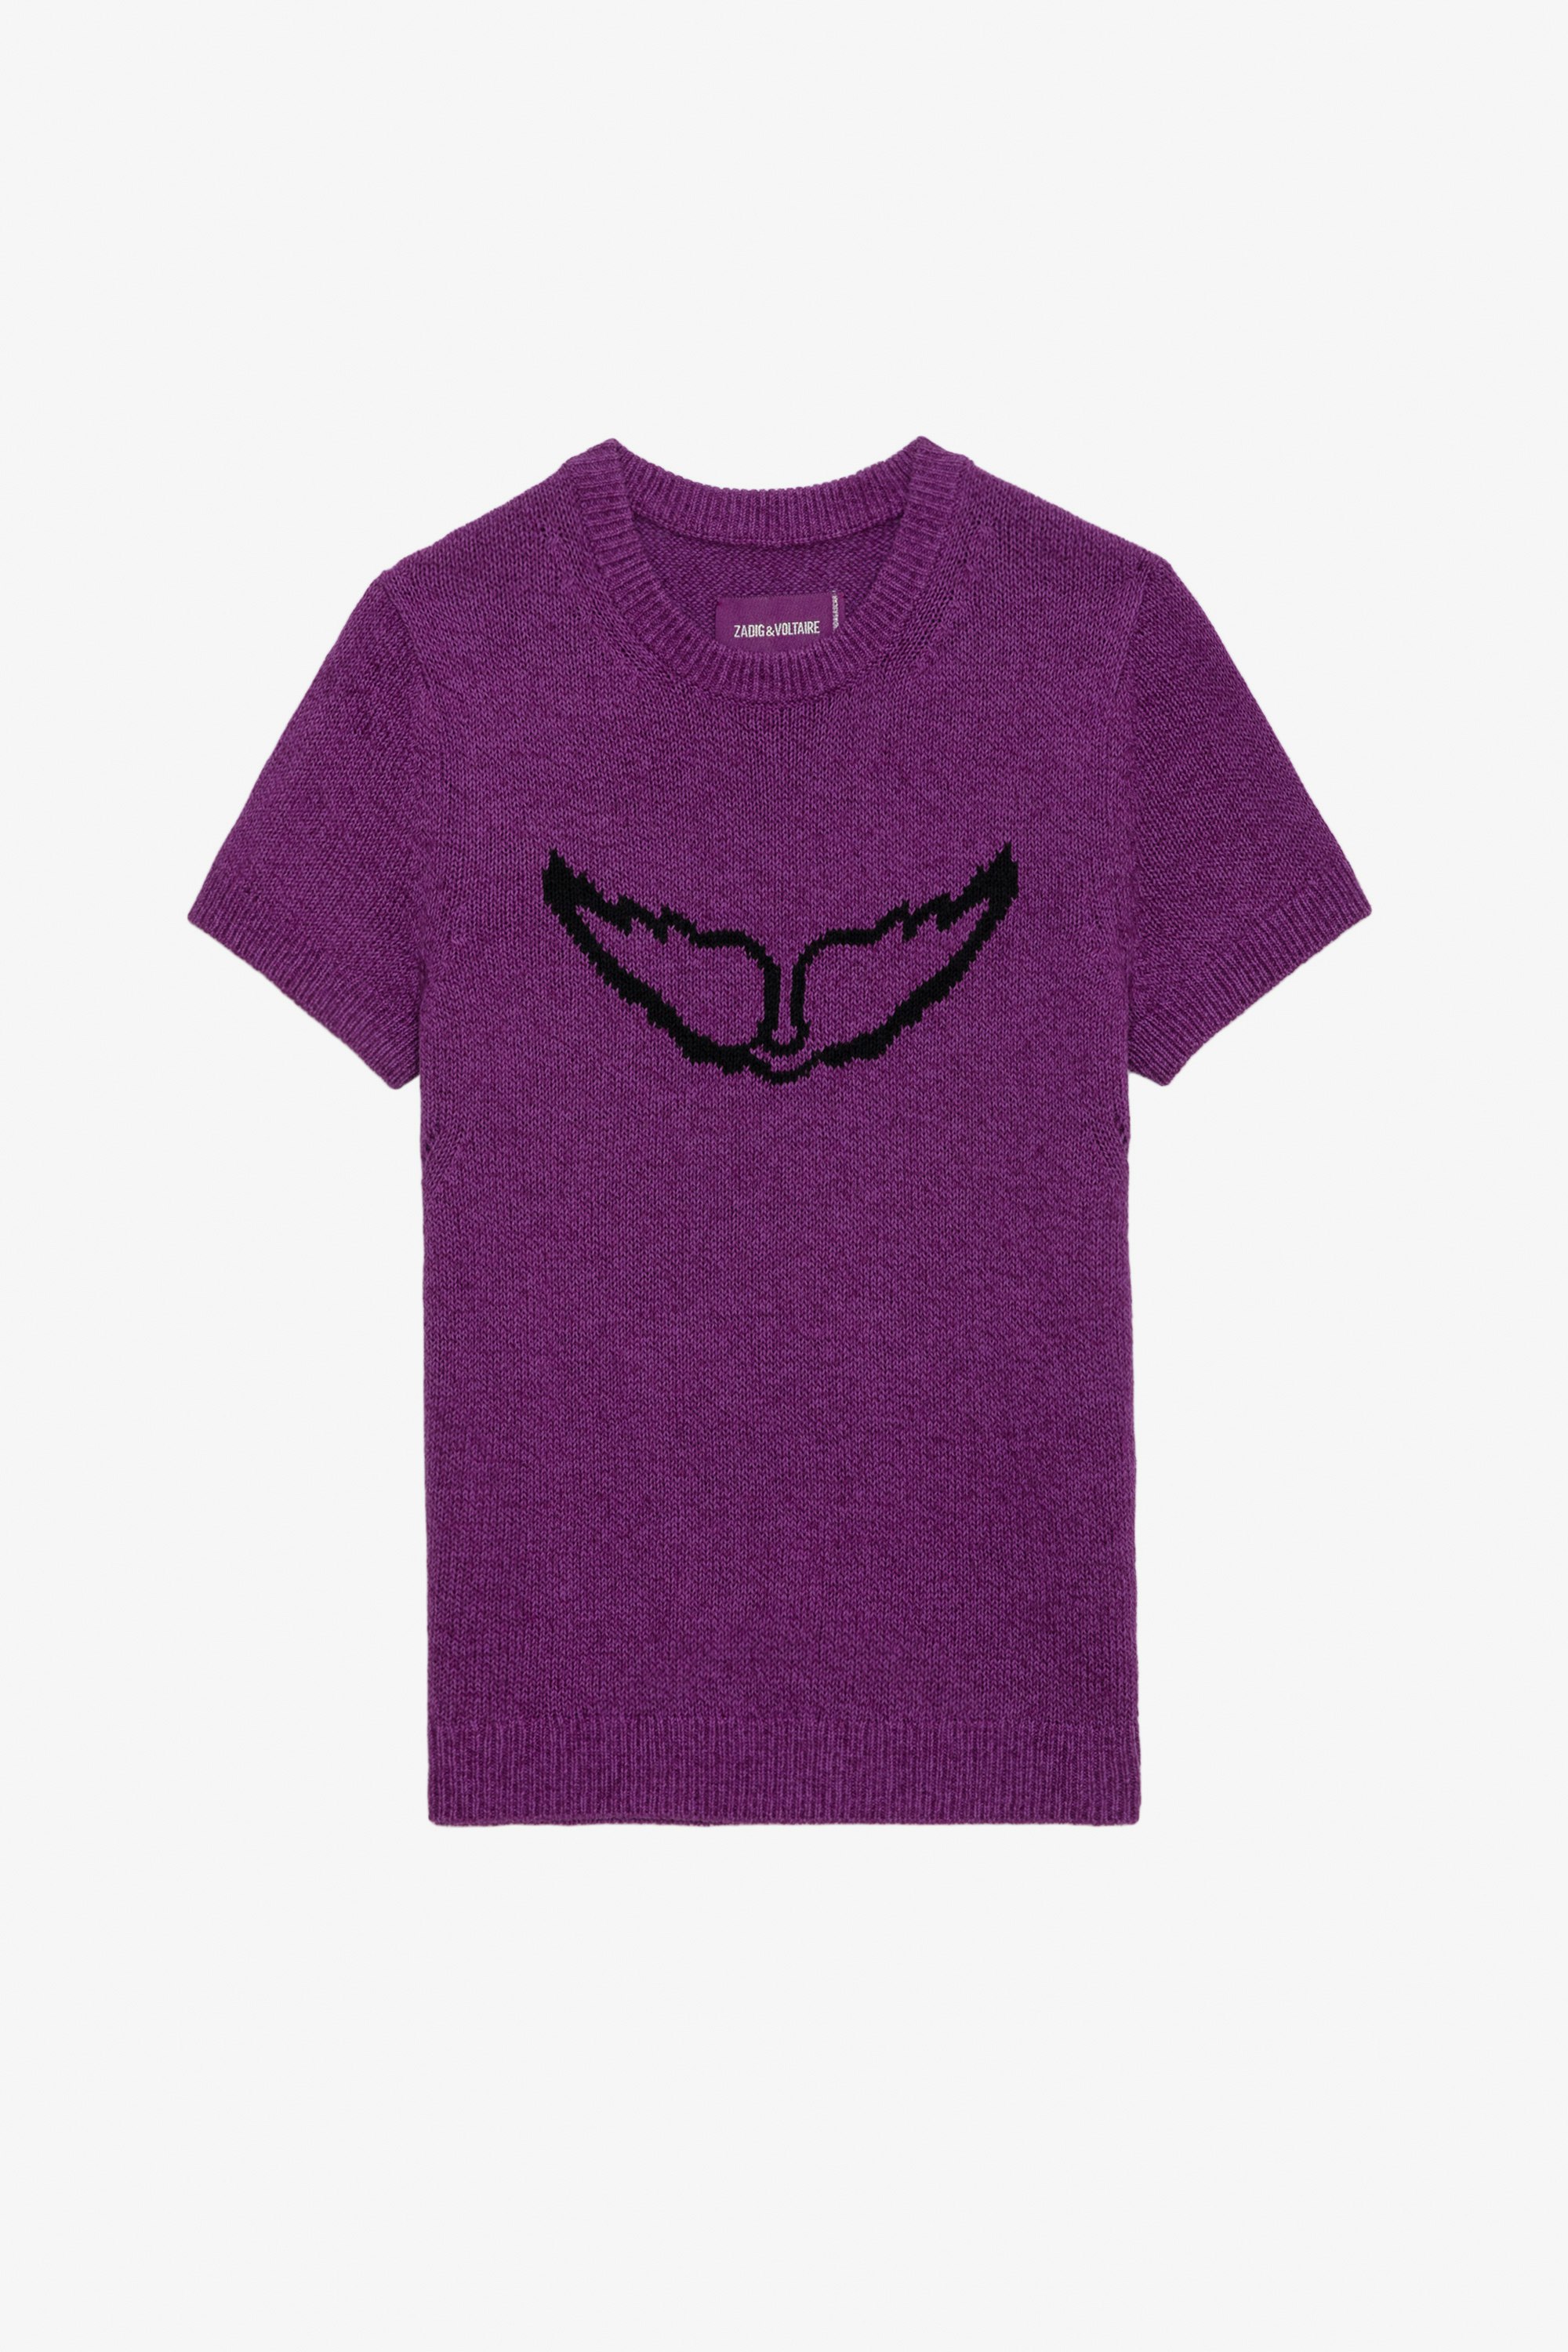 Jersey Sorly Alas - Jersey violeta de lino y algodón con mangas cortas y alas en jacquard de intarsia.